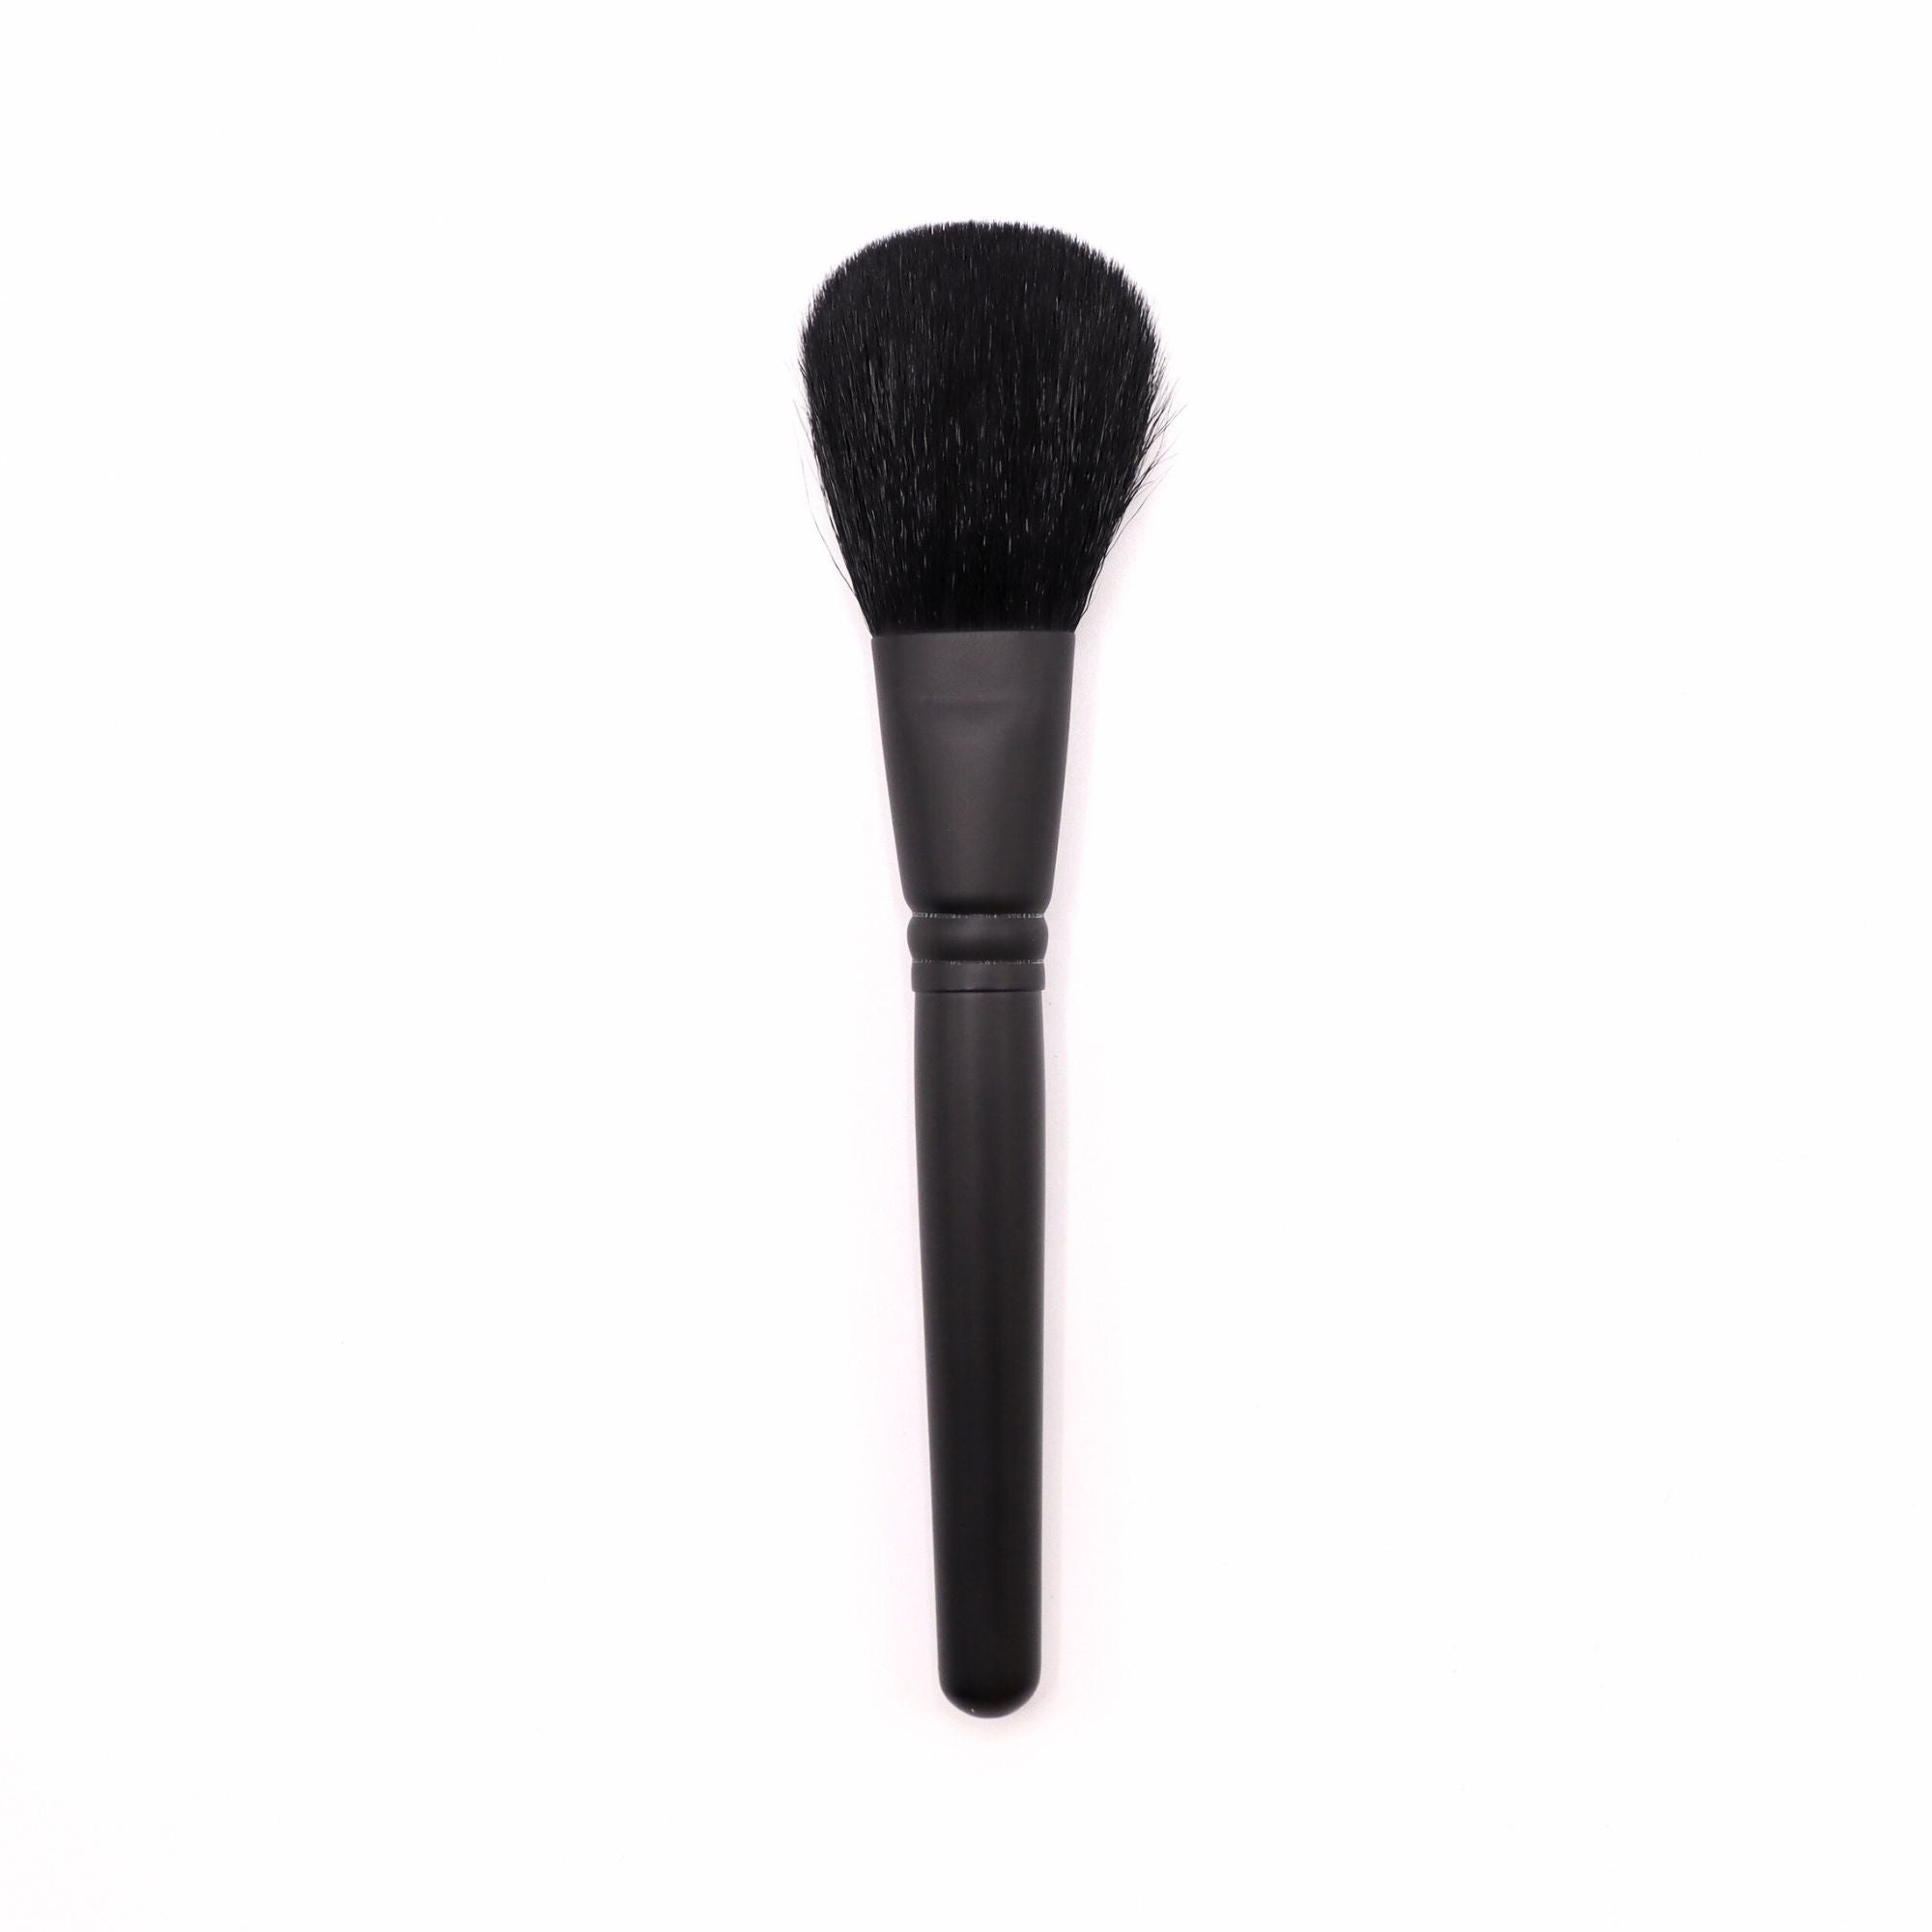 Tauhaus P-01 Bronzer & Cheek Brush, Pro Series - Fude Beauty, Japanese Makeup Brushes